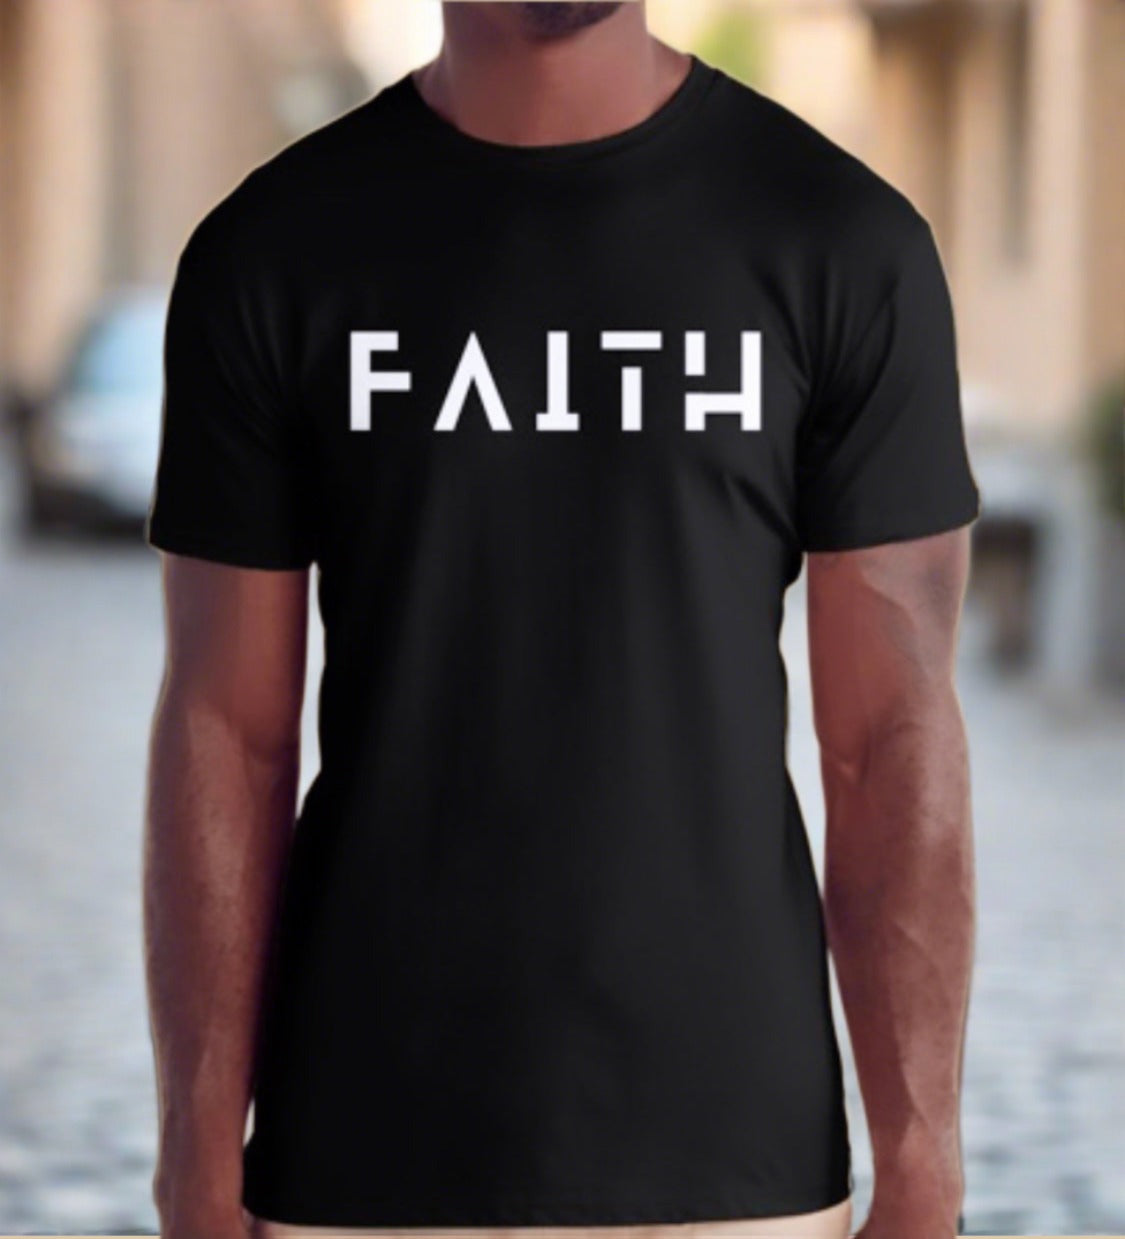 "FAITH" T-Shirt